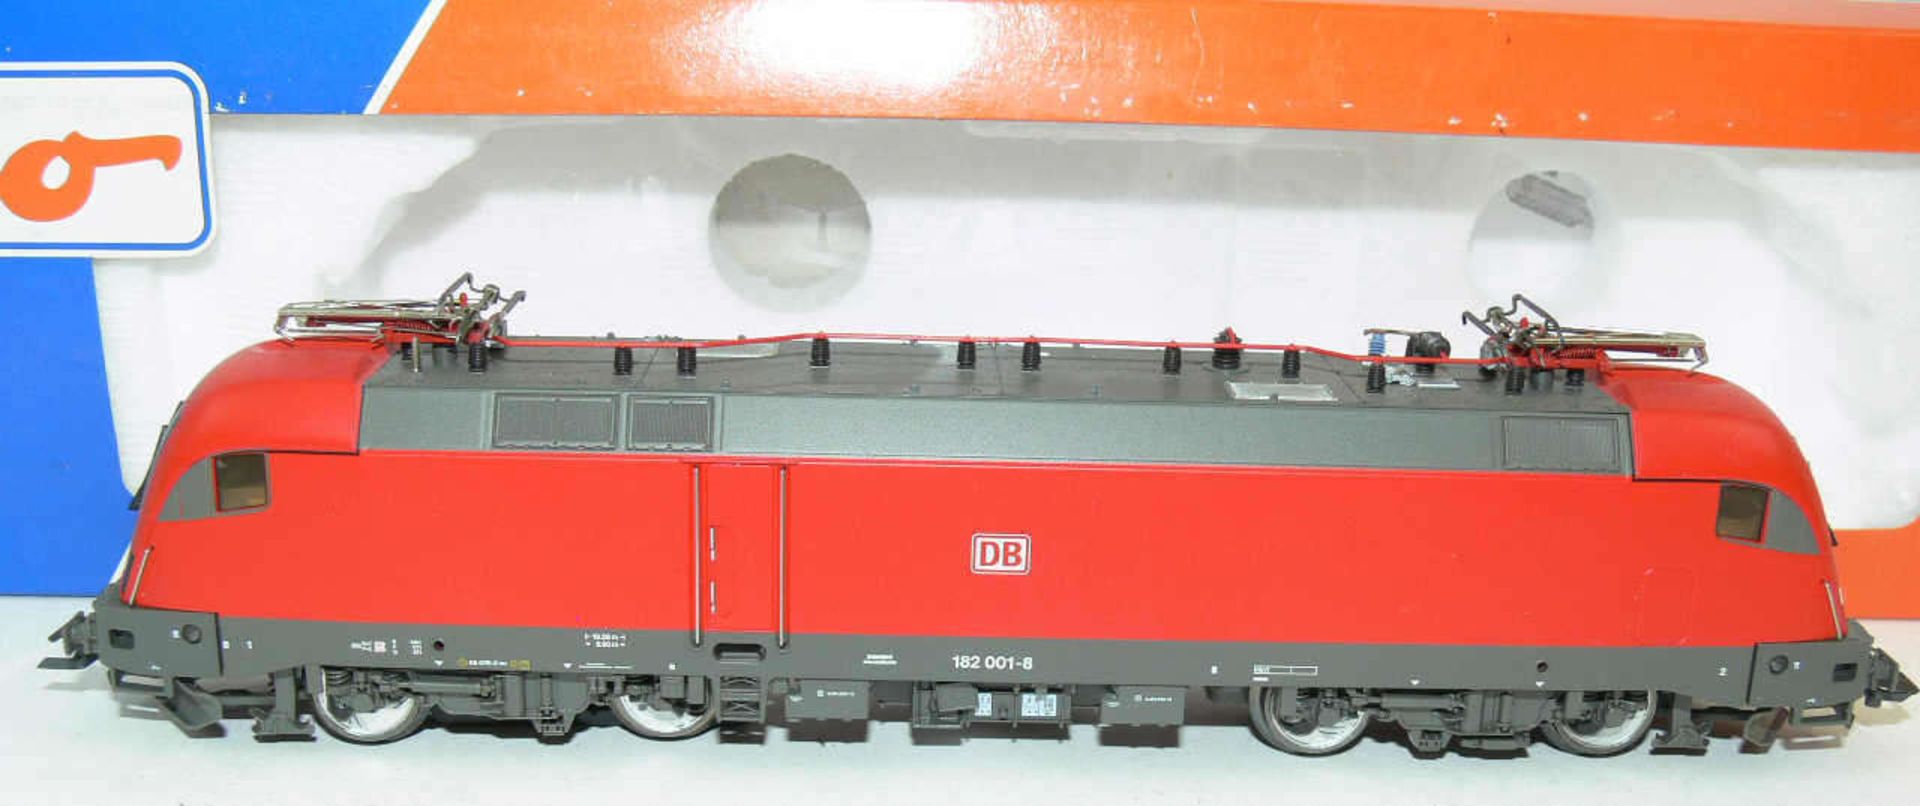 Roco H0 69685, E - Lokomotive BR 182 der DB. BN 182 001-8. Digital. Wechselstrom. Neuwertiger